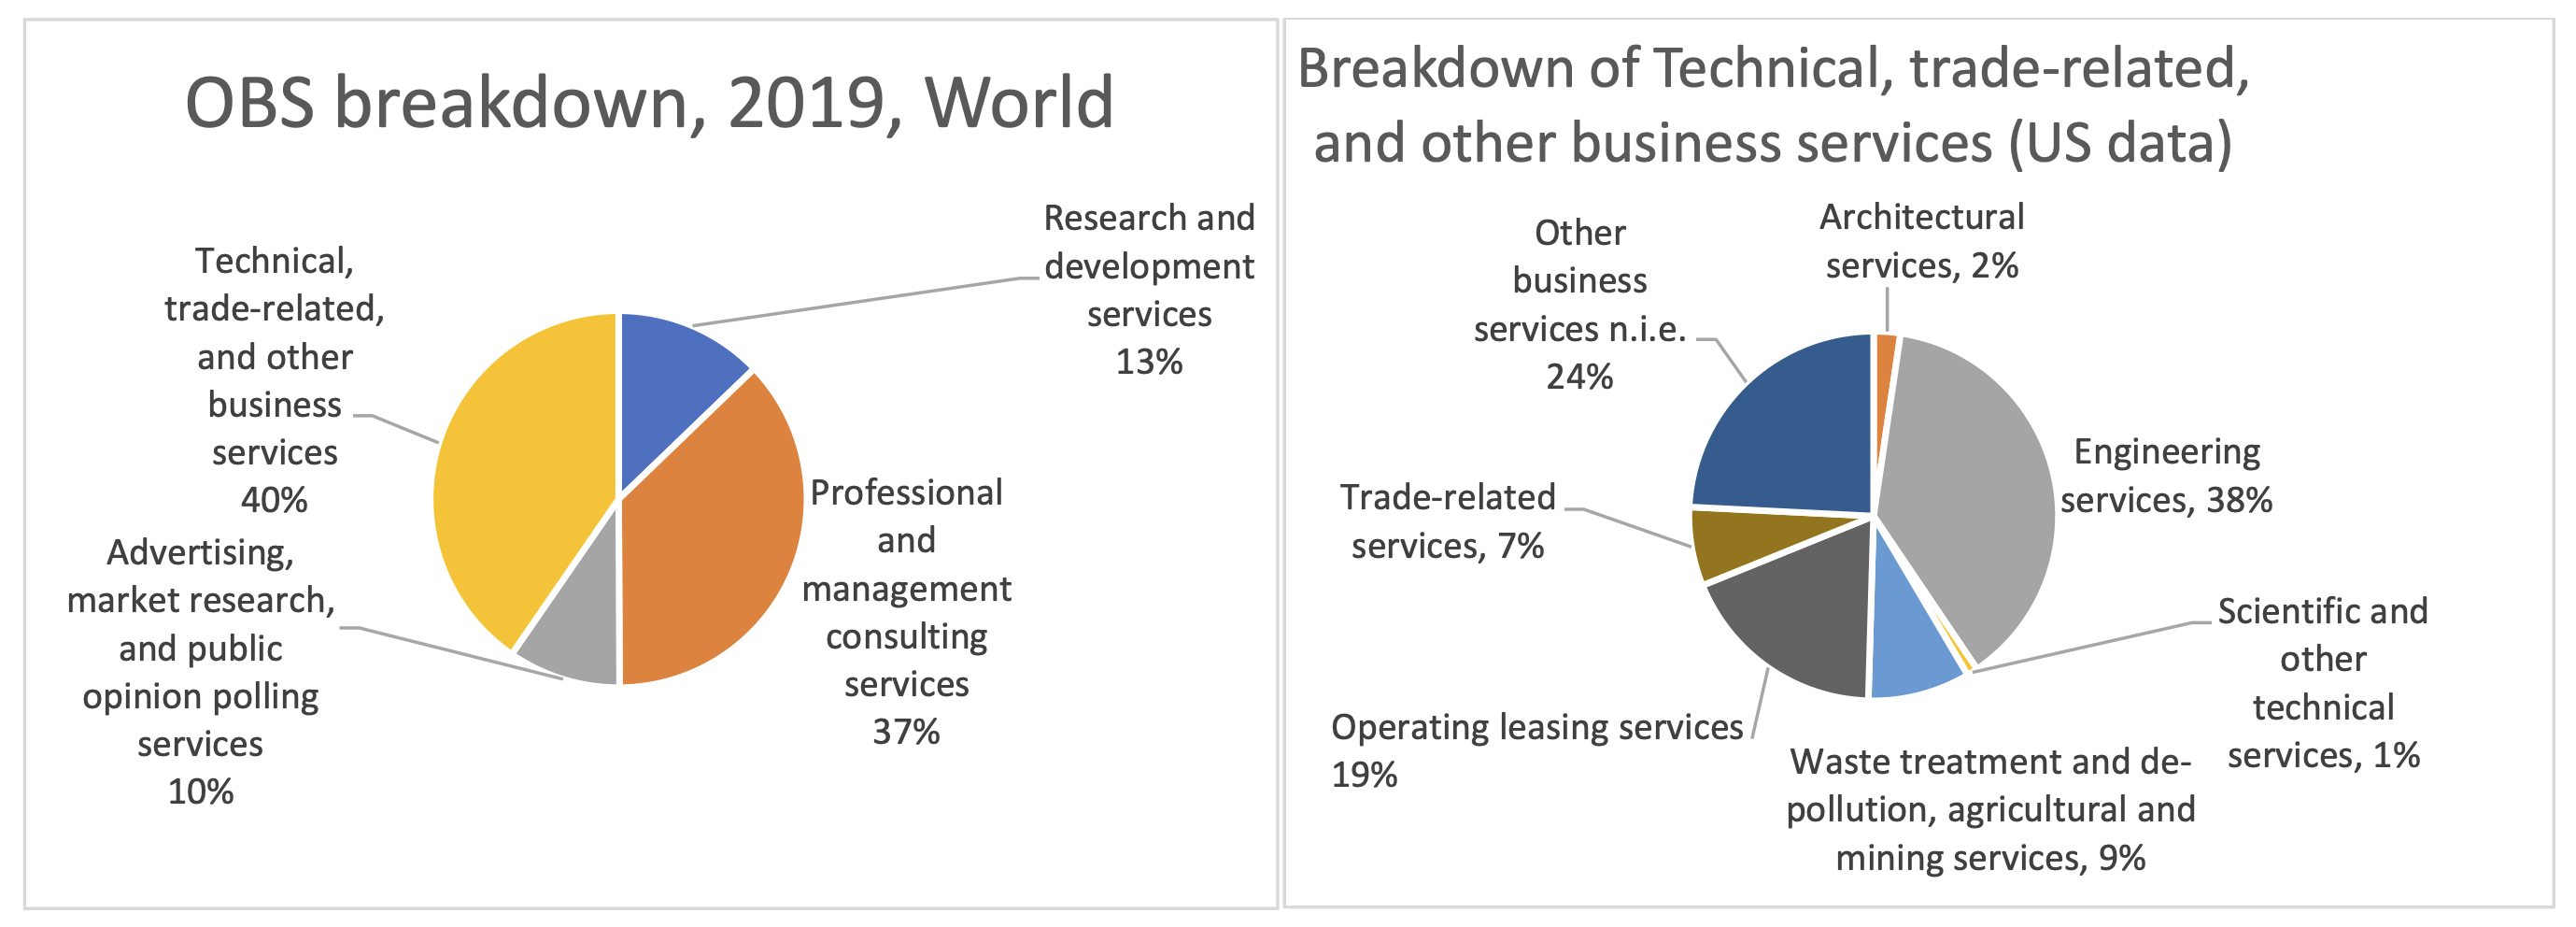 图A3 2019年“其他业务服务”细分情况，世界(左图)和美国(右图)